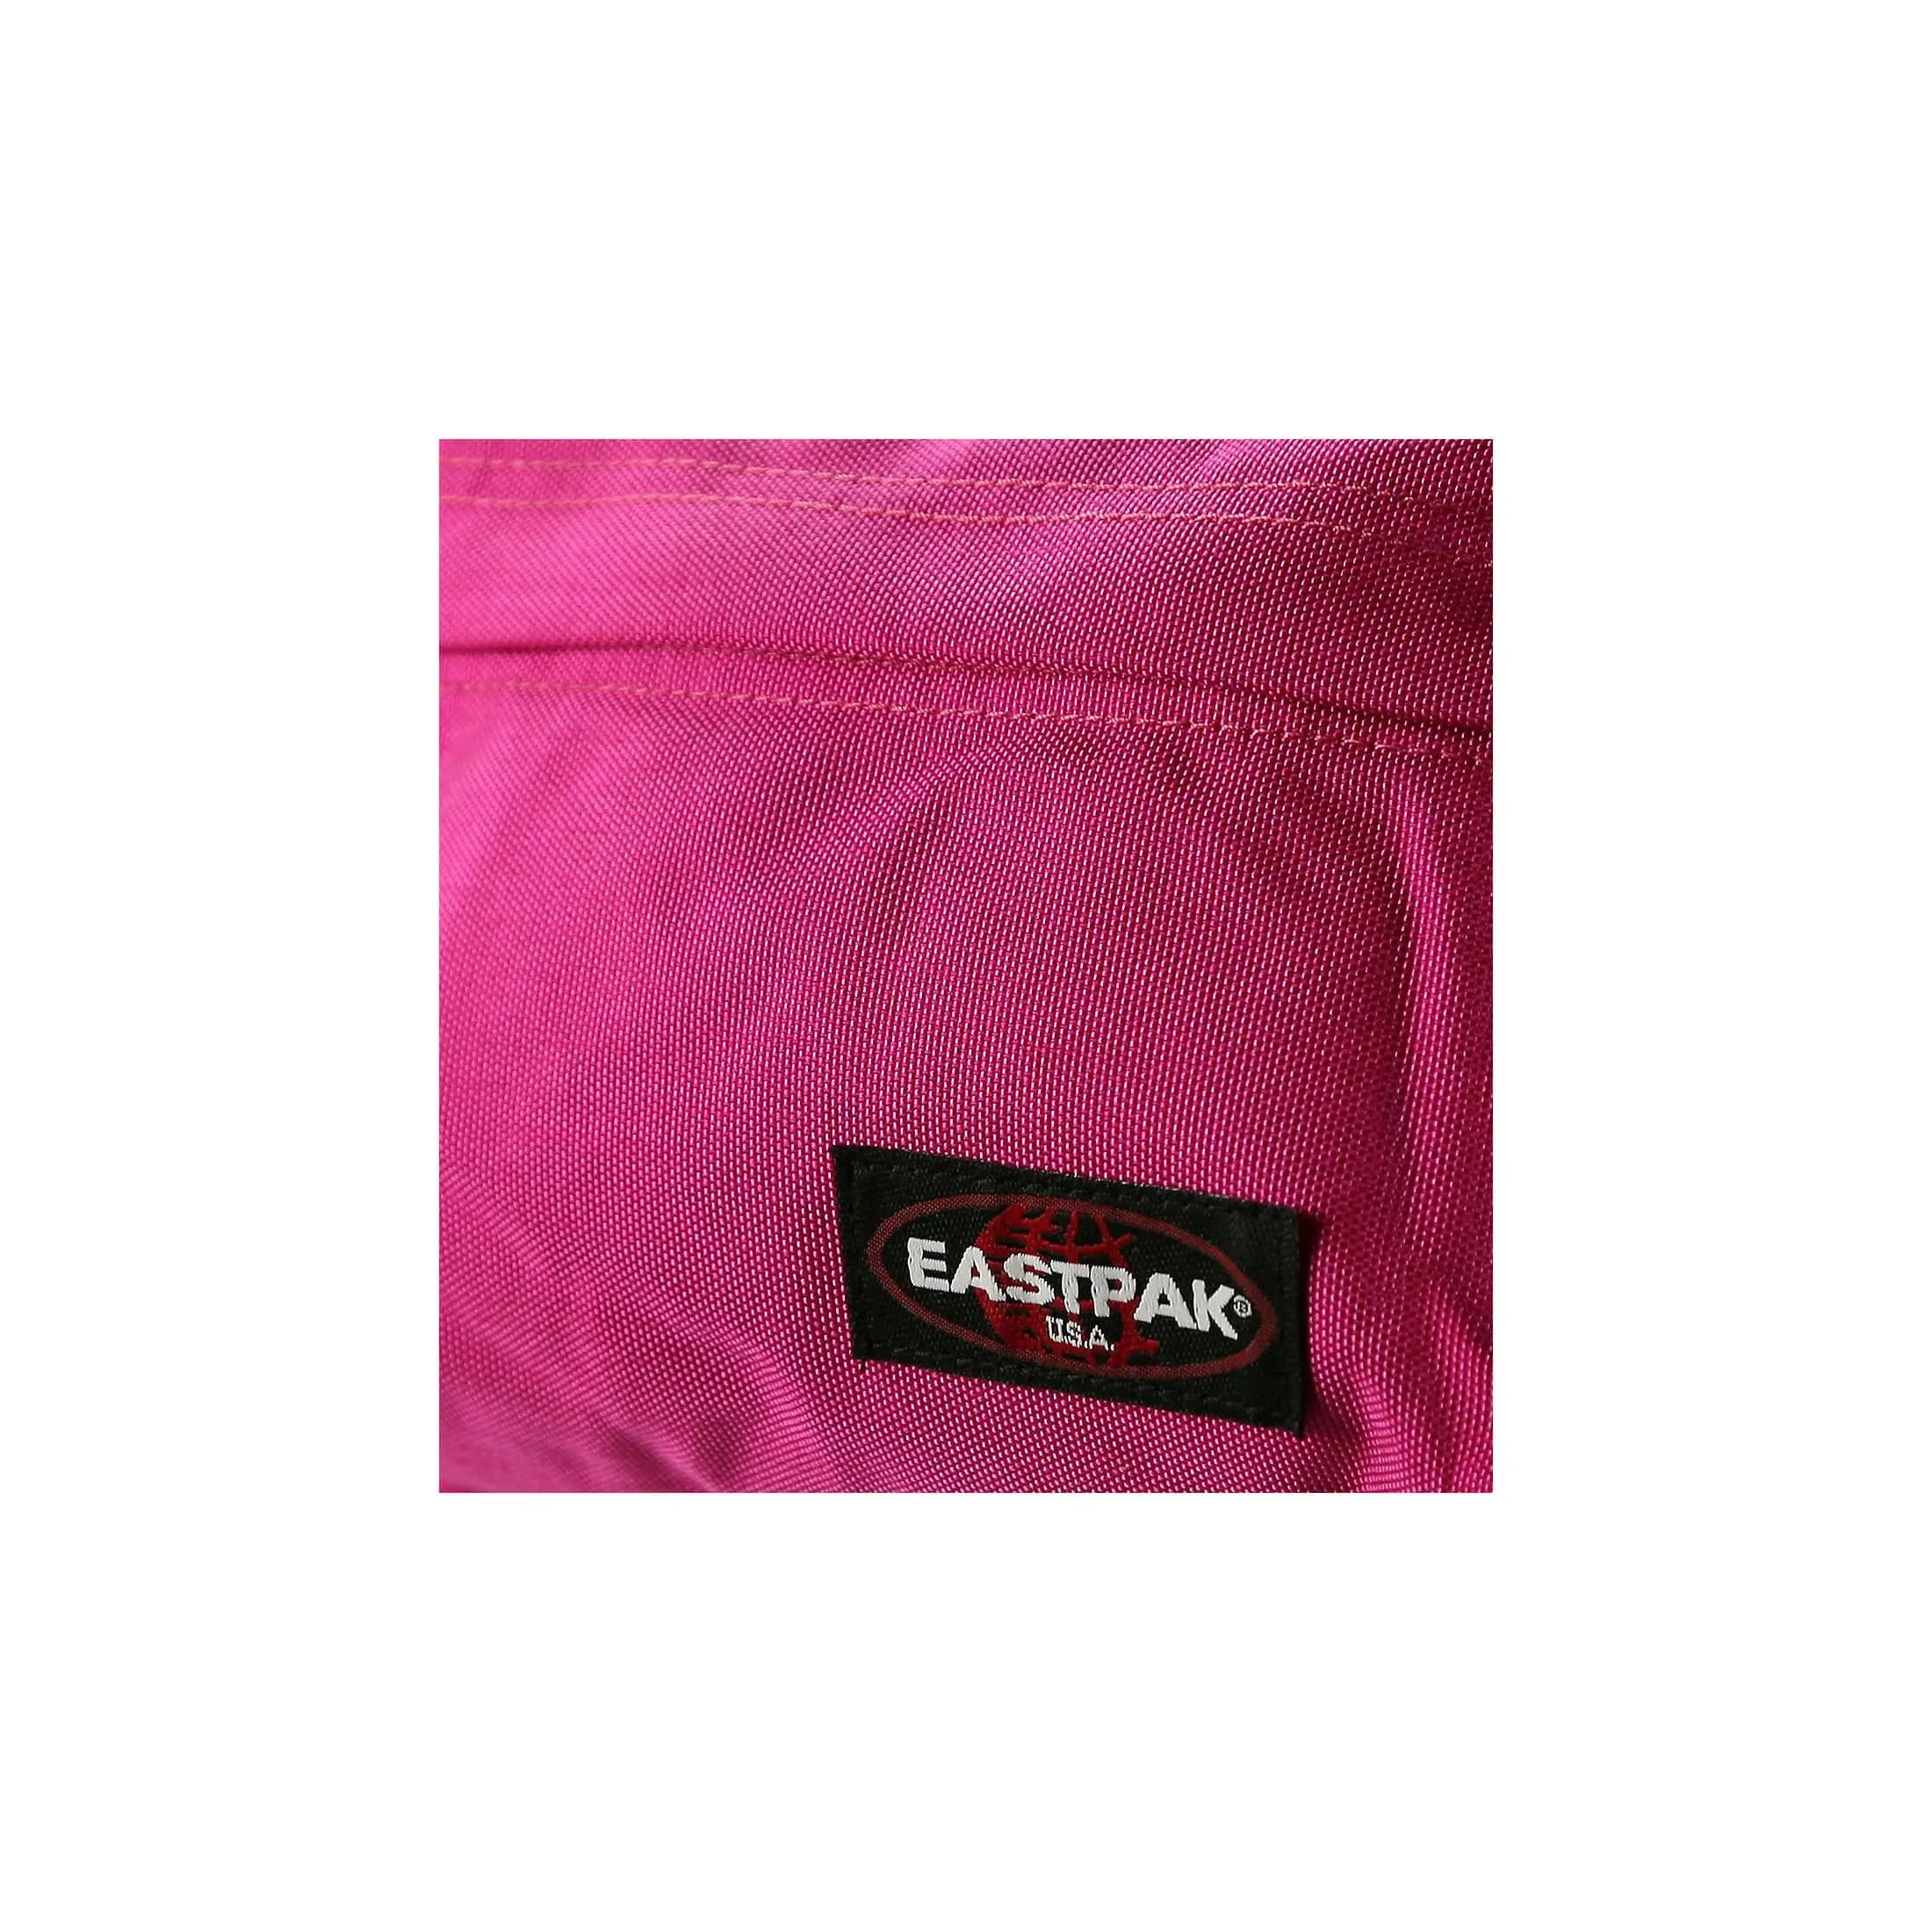 Eastpak Authentic Orbit sac à dos de loisirs 33 cm - gris dimanche